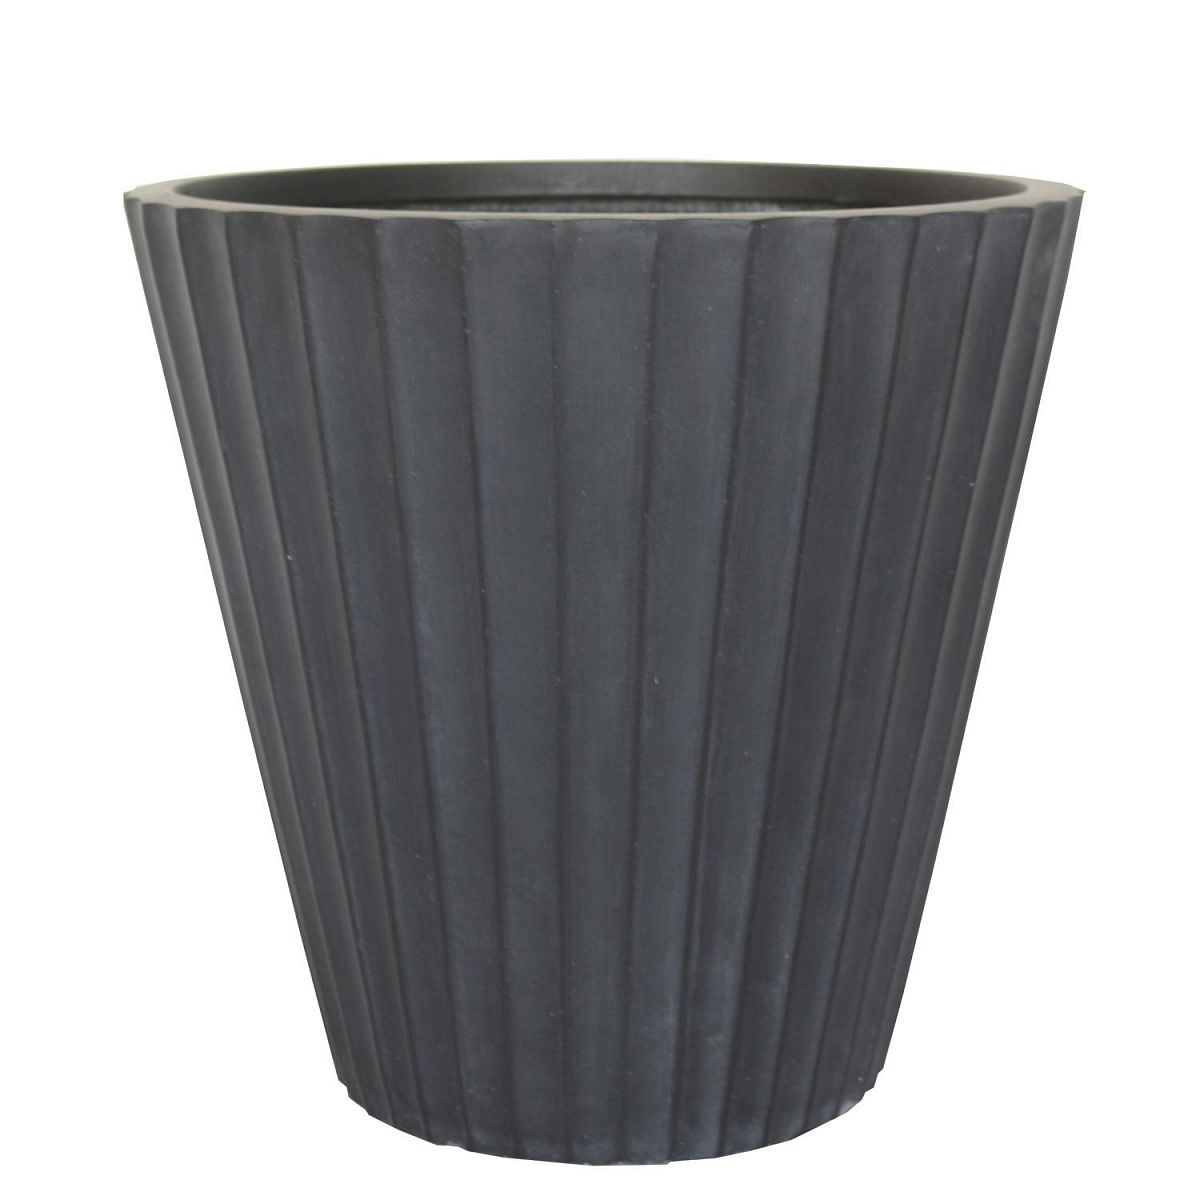 IDEALIST Lite Vintage Ribbed Round Vase Outdoor Planter